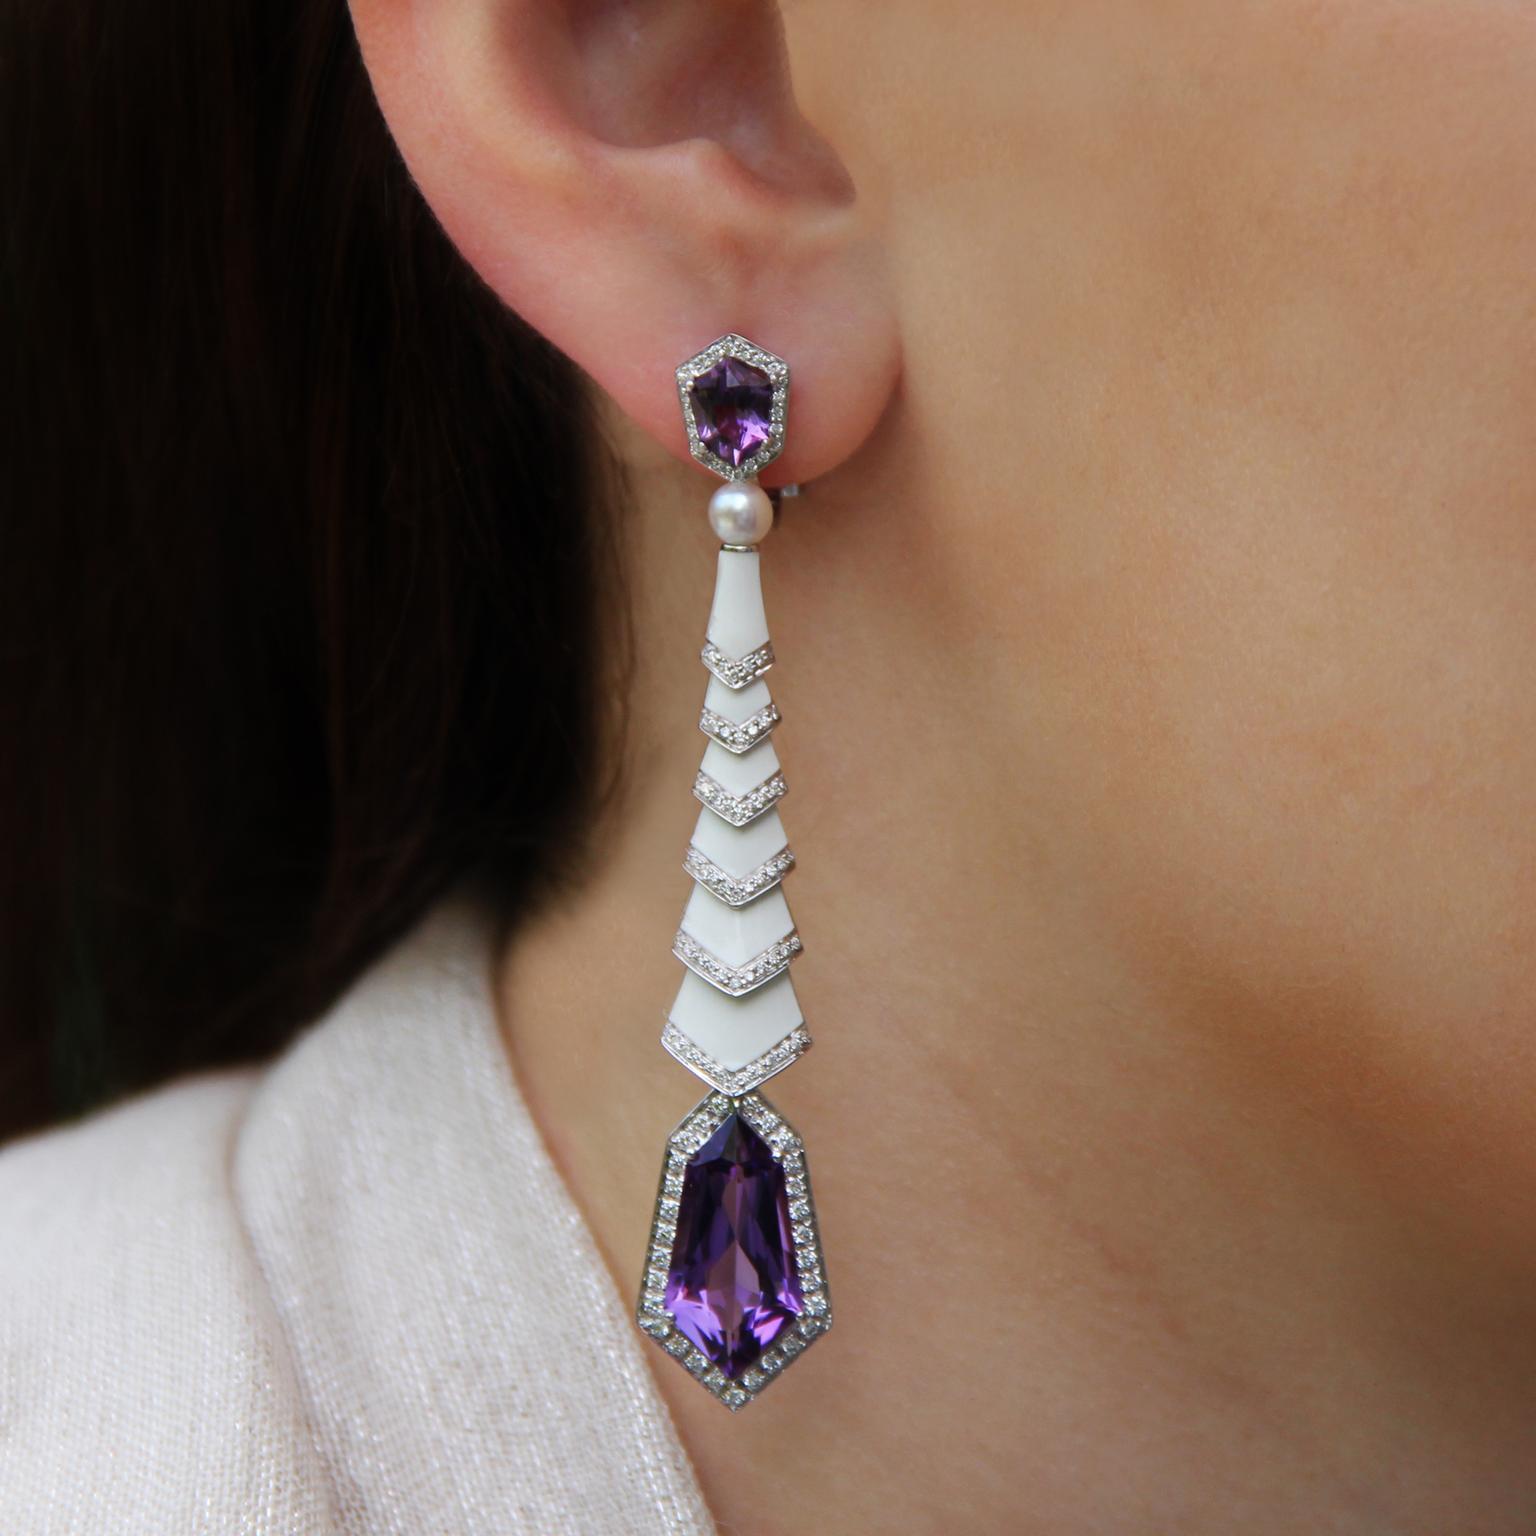 Avakian Gatsby earrings in amethyst and enamel